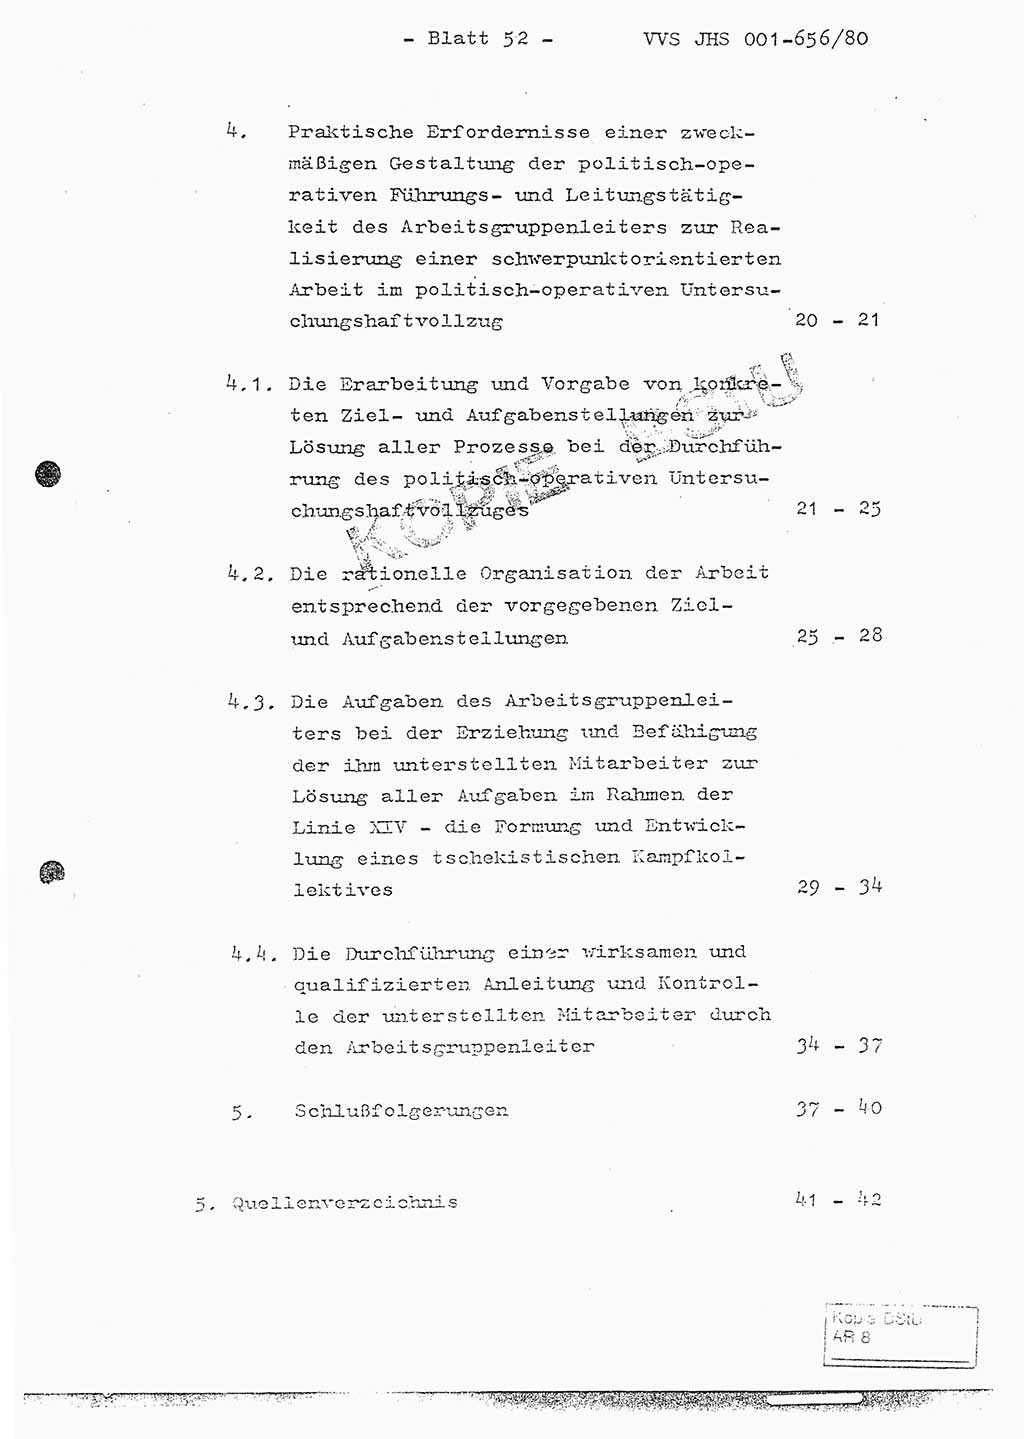 Fachschulabschlußarbeit Unterleutnant Christian Kätzel (Abt. ⅩⅣ), Ministerium für Staatssicherheit (MfS) [Deutsche Demokratische Republik (DDR)], Juristische Hochschule (JHS), Vertrauliche Verschlußsache (VVS) 001-656/80, Potsdam 1980, Blatt 52 (FS-Abschl.-Arb. MfS DDR JHS VVS 001-656/80 1980, Bl. 52)